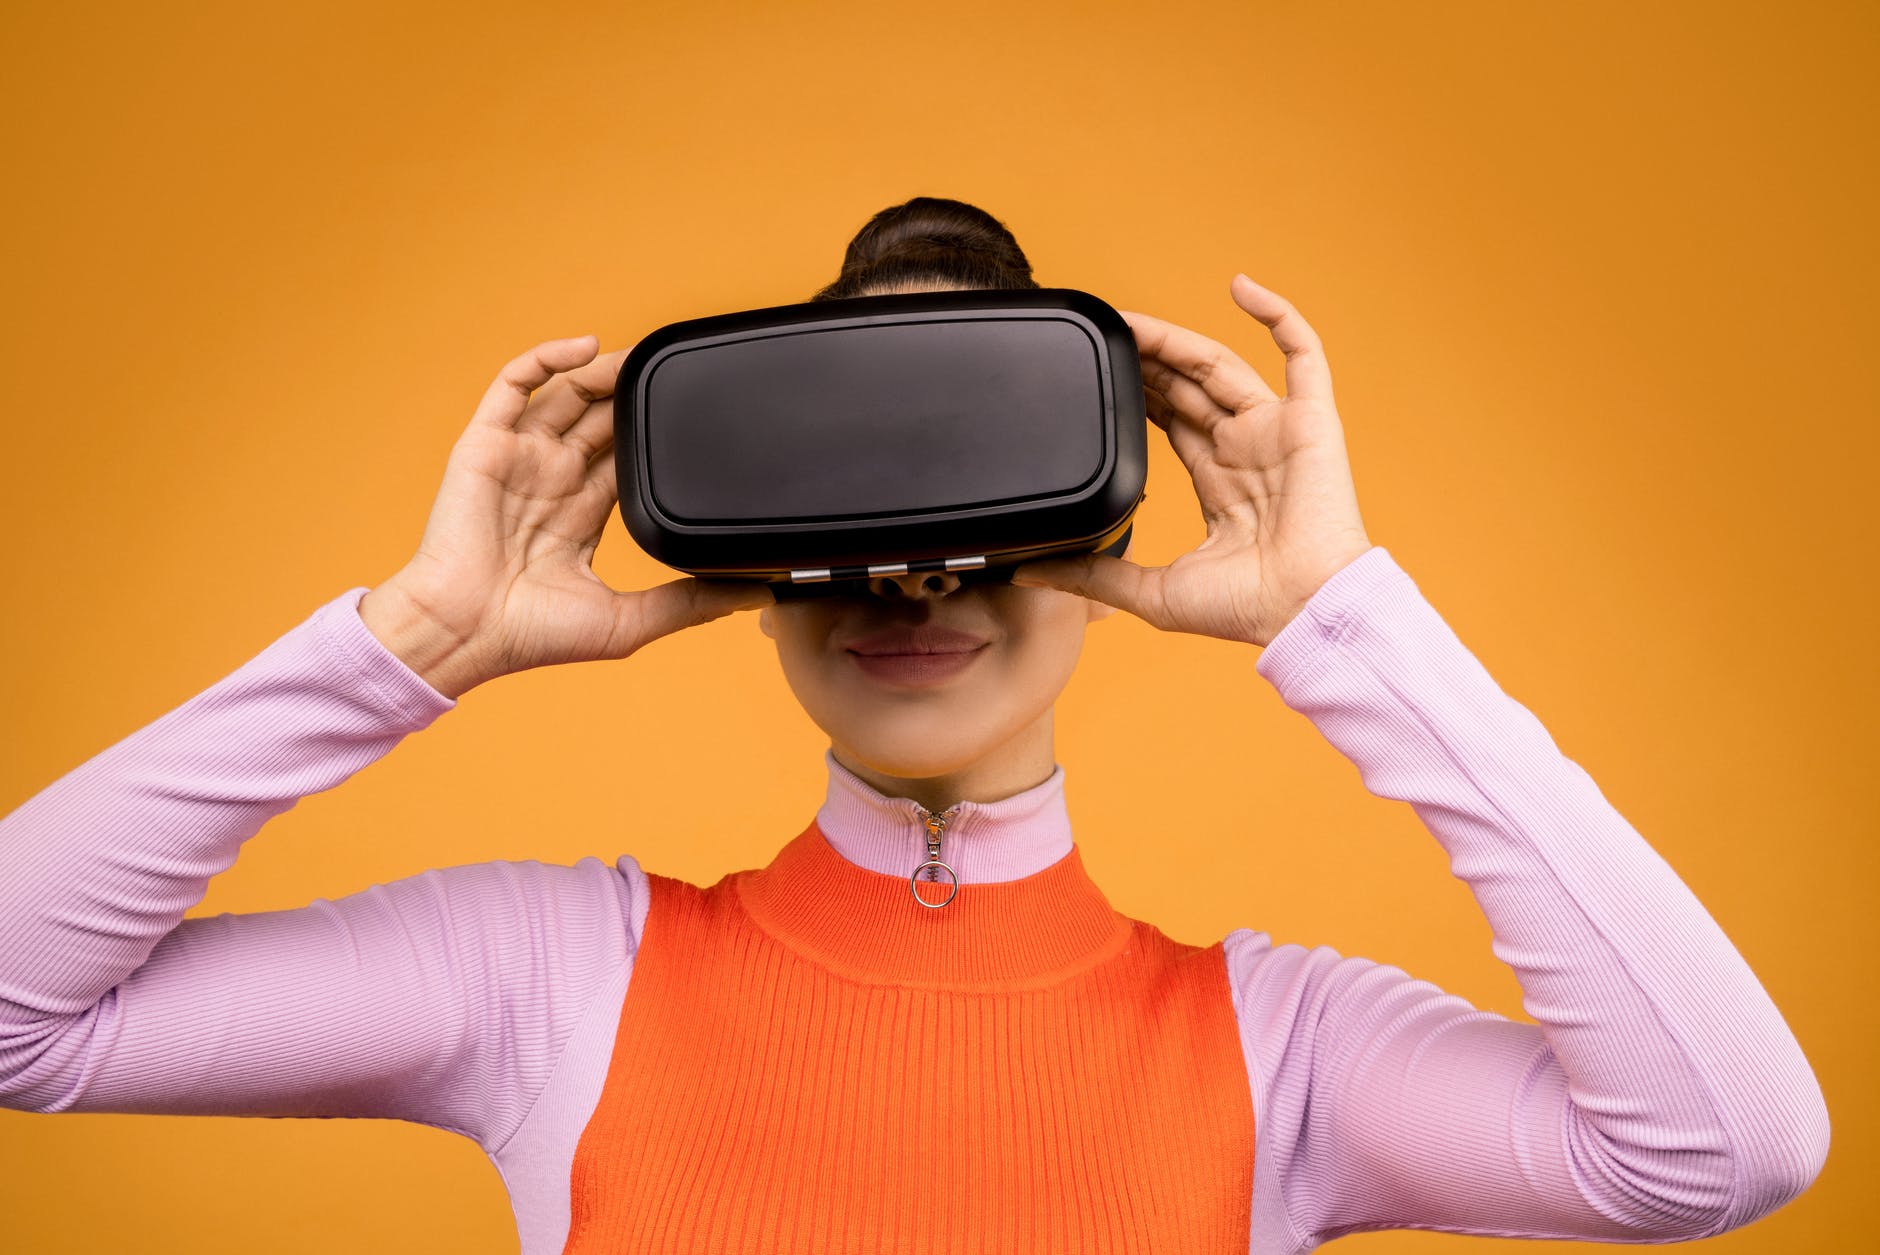 Imagen de una mujer joven ajustándose sobre el rostro unas gafas de realidad virtual.